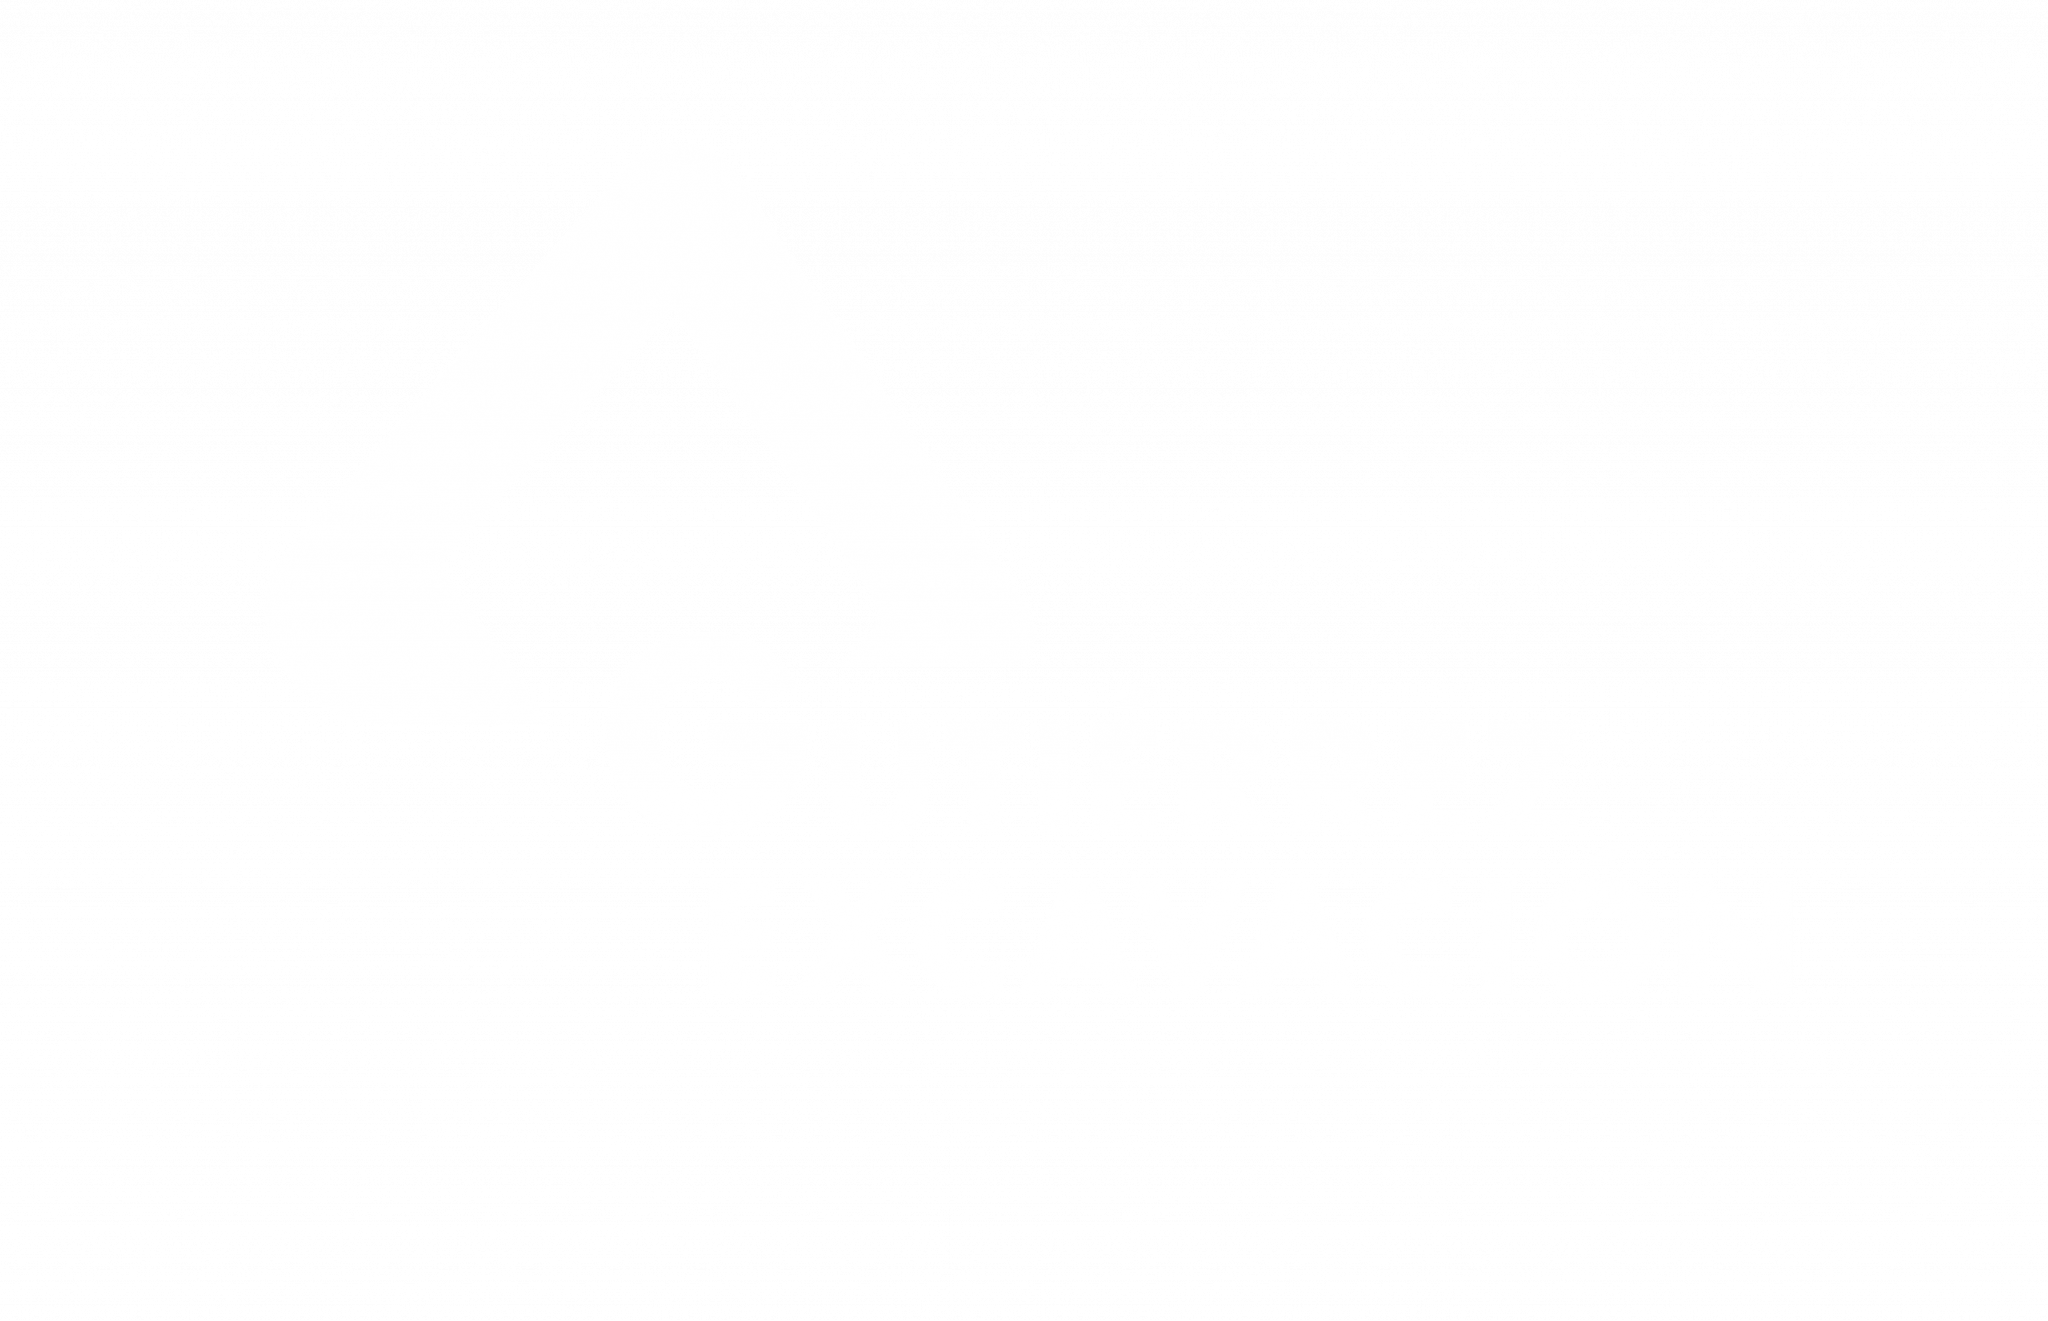 la mejor empresas de excavaciones, movimientos de tierras y derribos en el sector de la construccion y ampliamente conocida y recomendada. Quien no conoce Gutierrez?